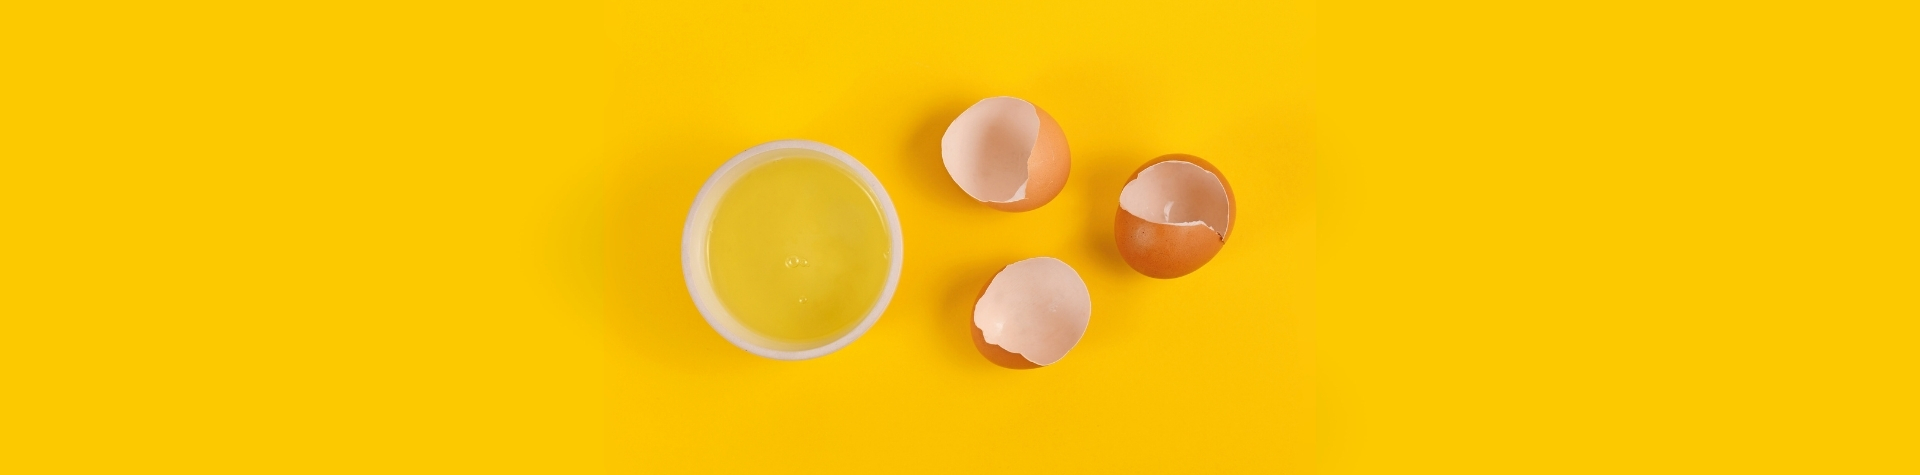 Huevos rotos y un cuenco de clara líquida pasteurizada sobre fondo amarillo